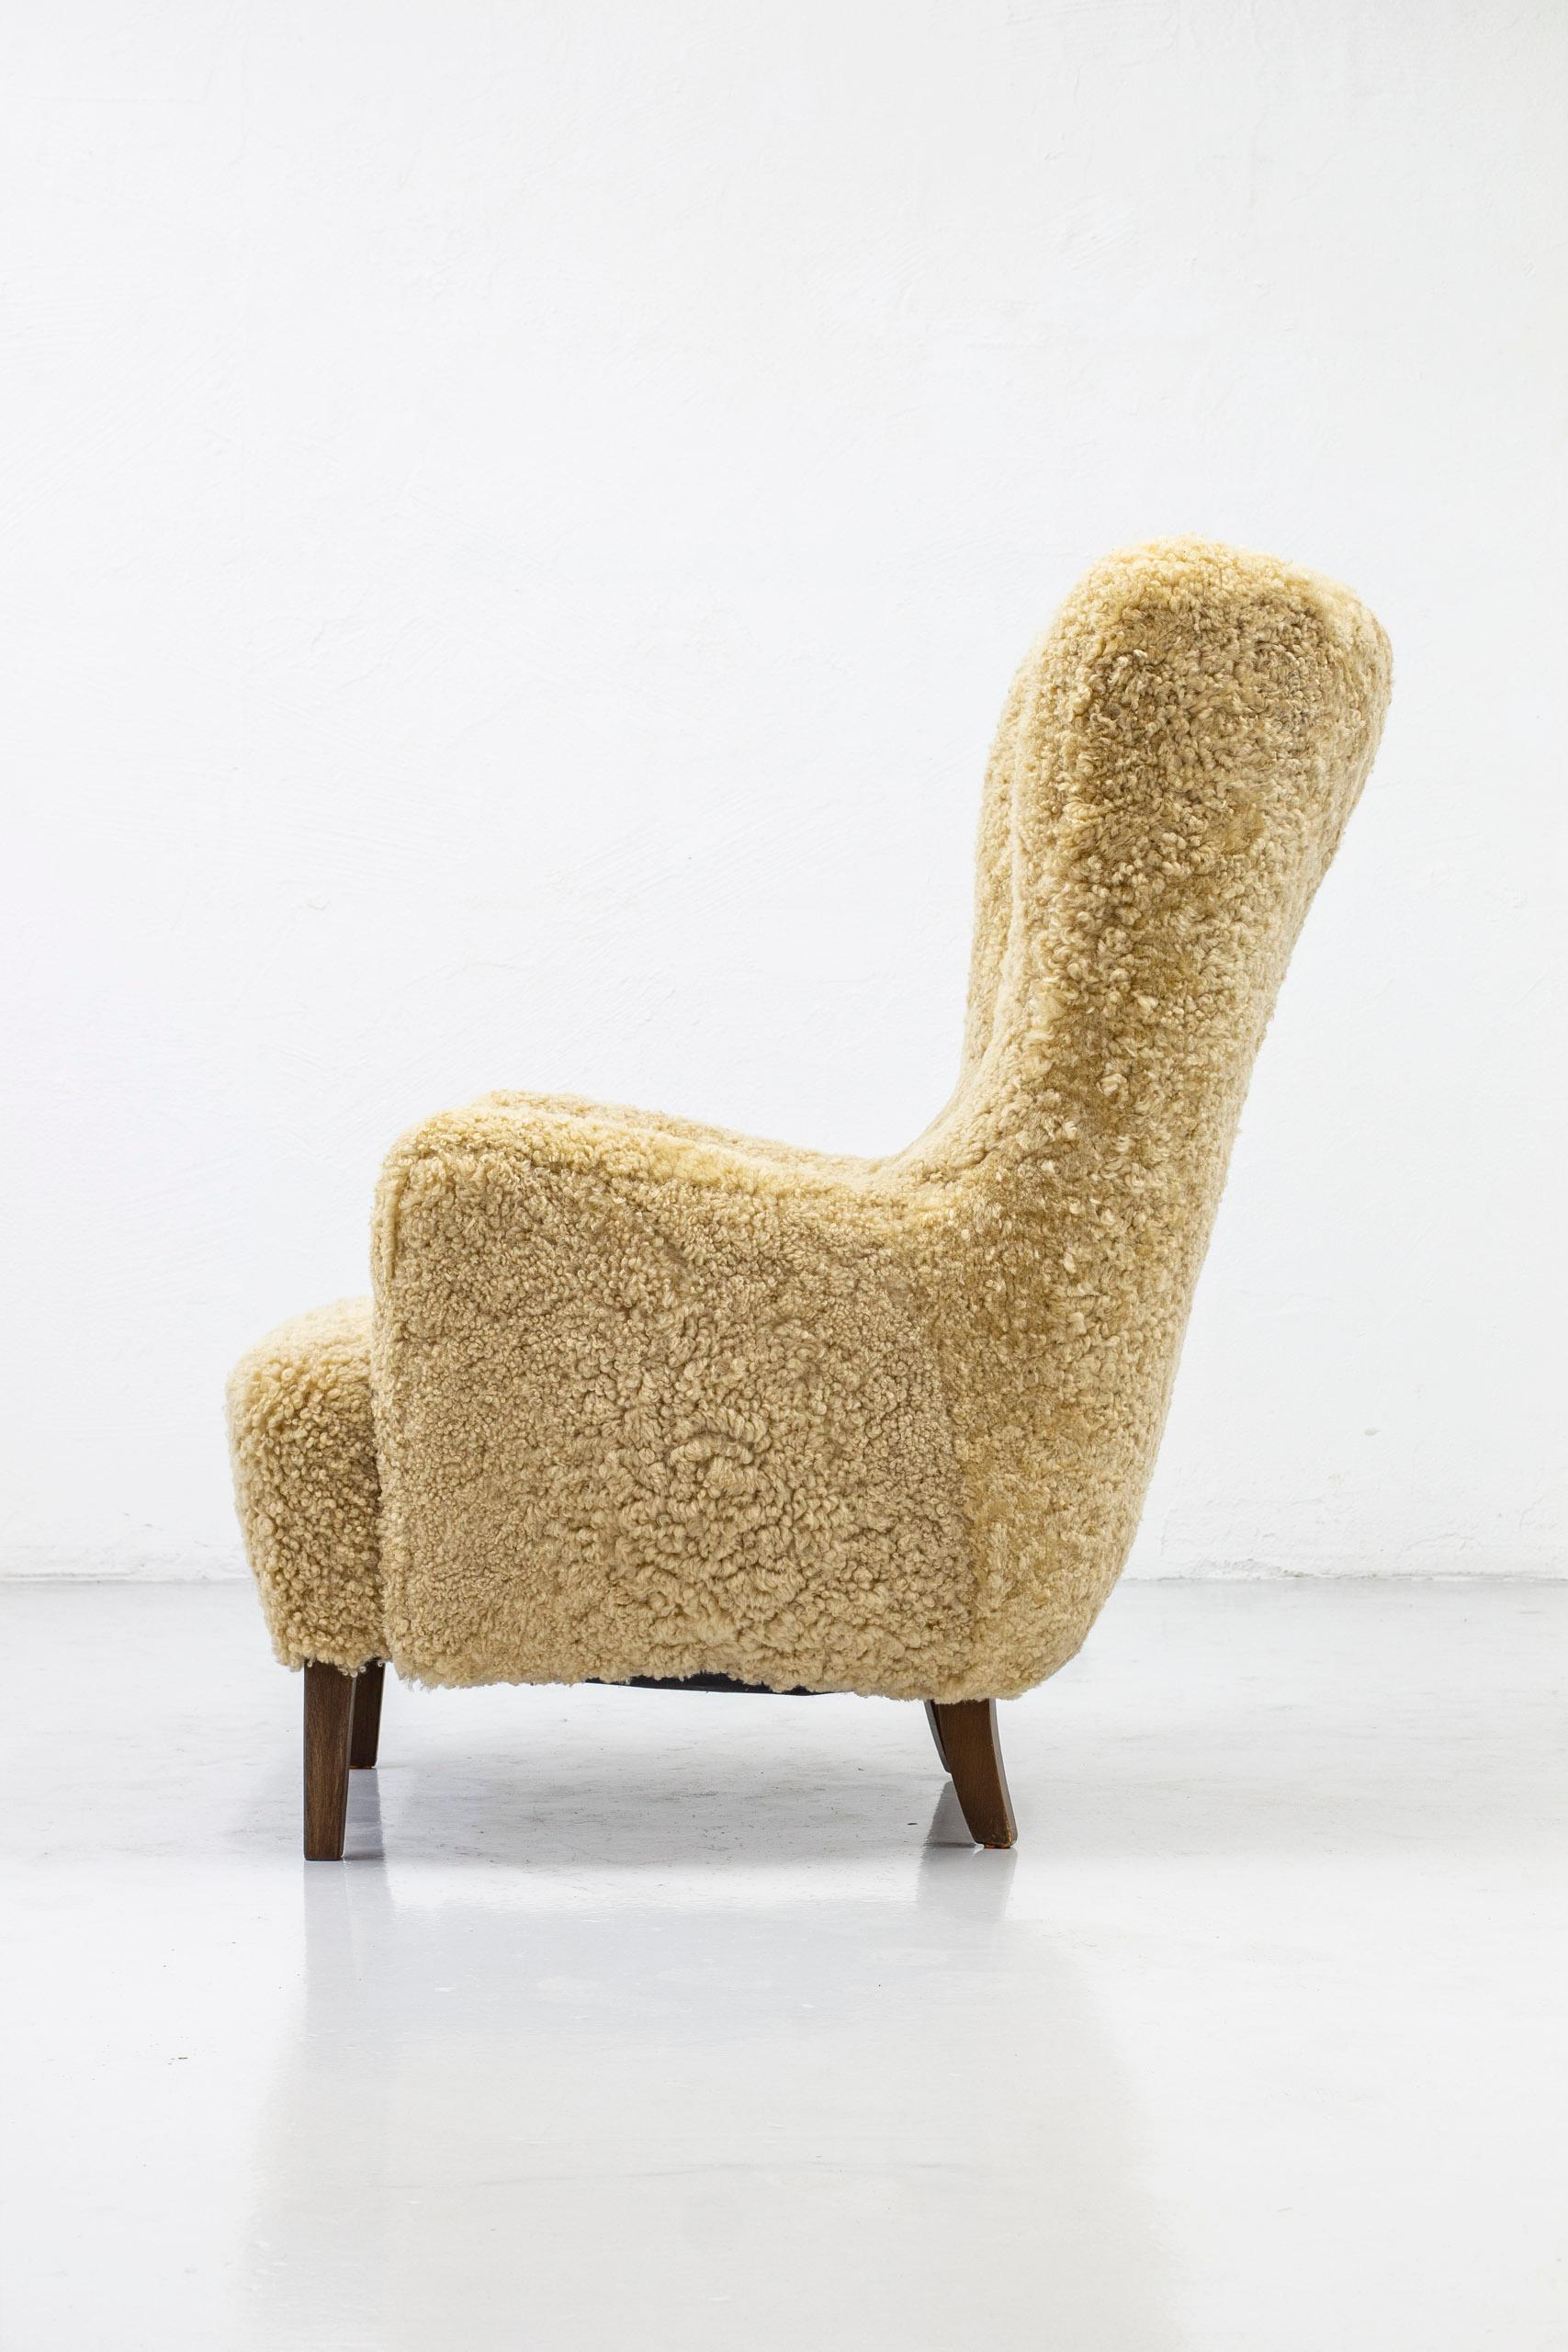 Danish Modern High Back Chair with Sheepskin Upholstery, Denmark, 1950s 1